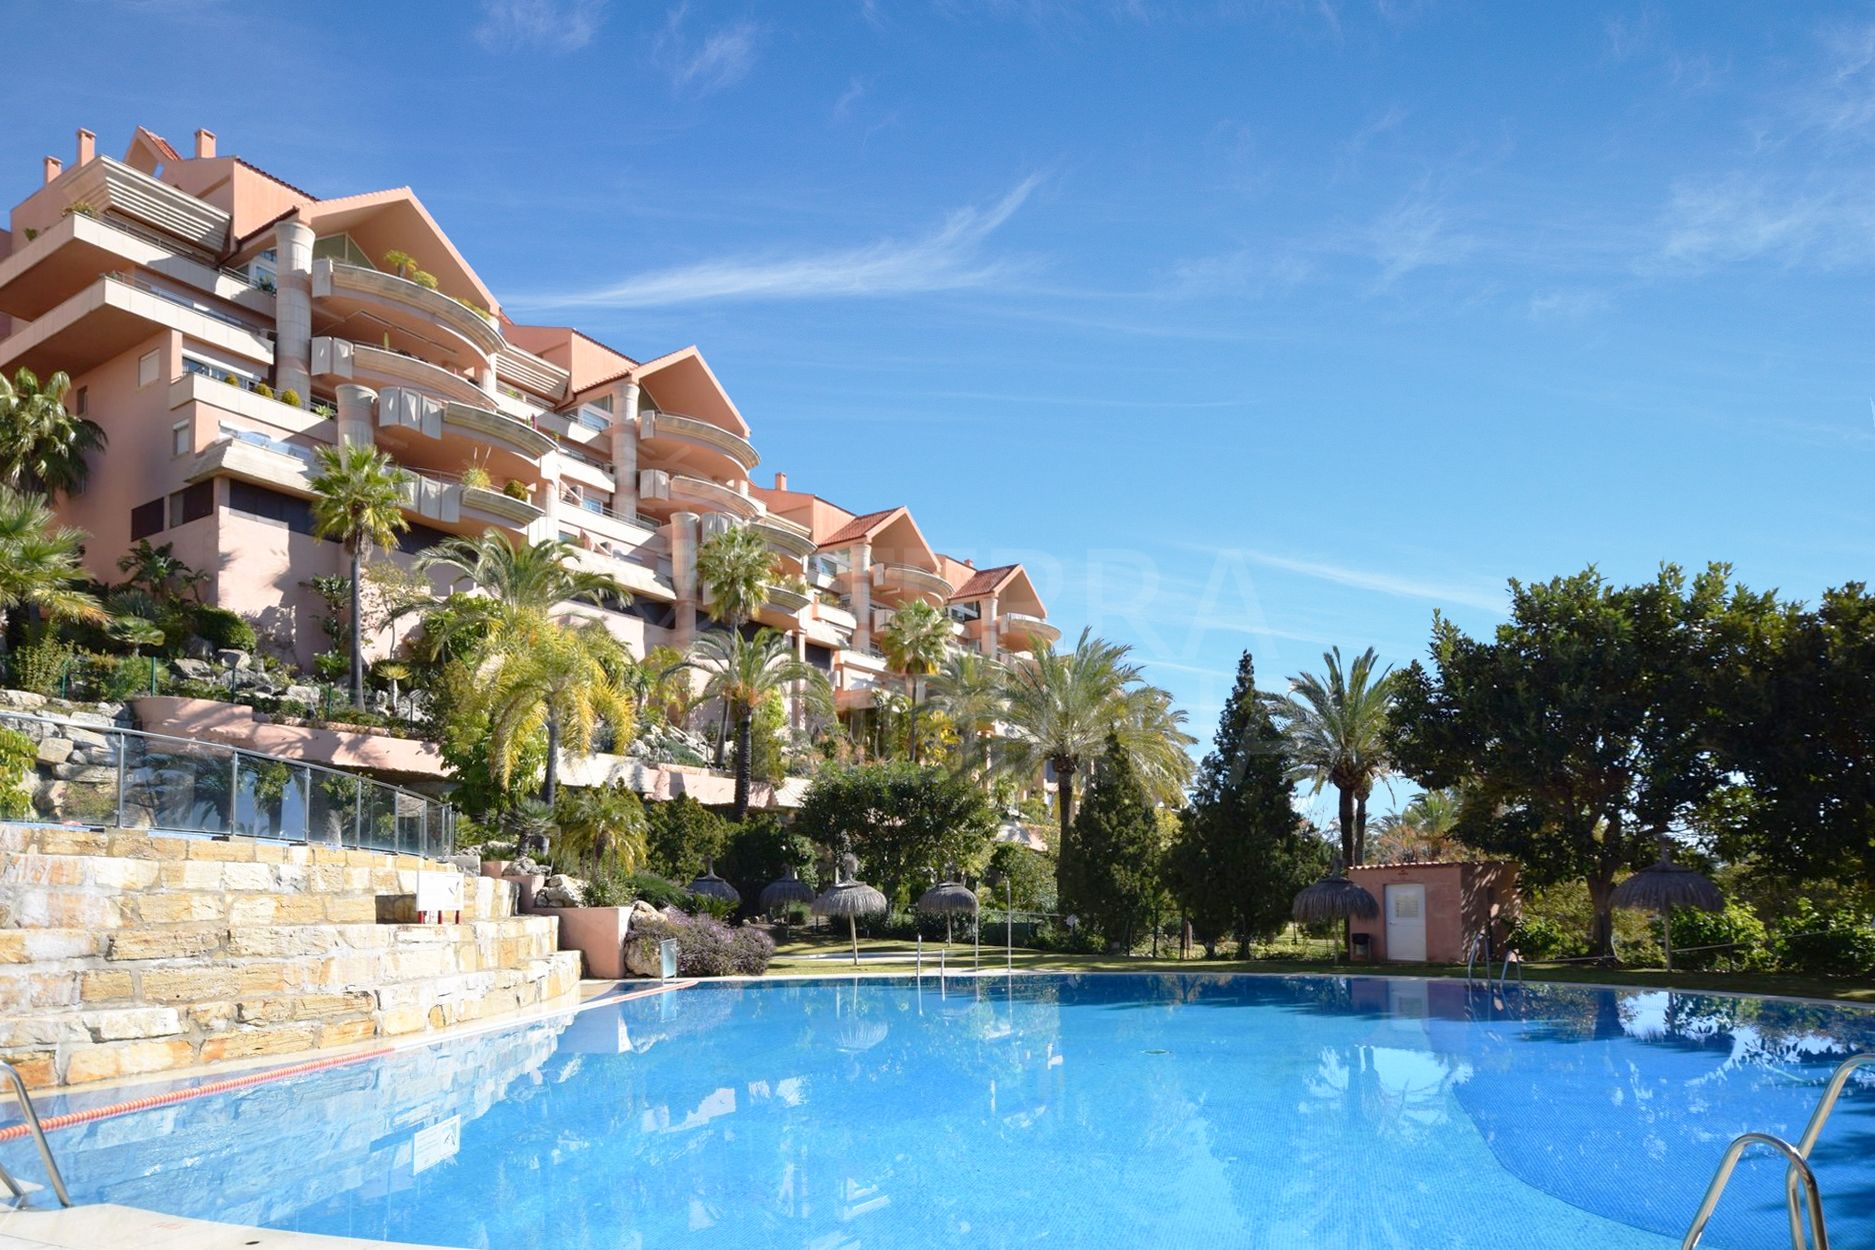 Luxury three bedroom duplex penthouse with solarium for sale in Nueva Andalucia, Marbella